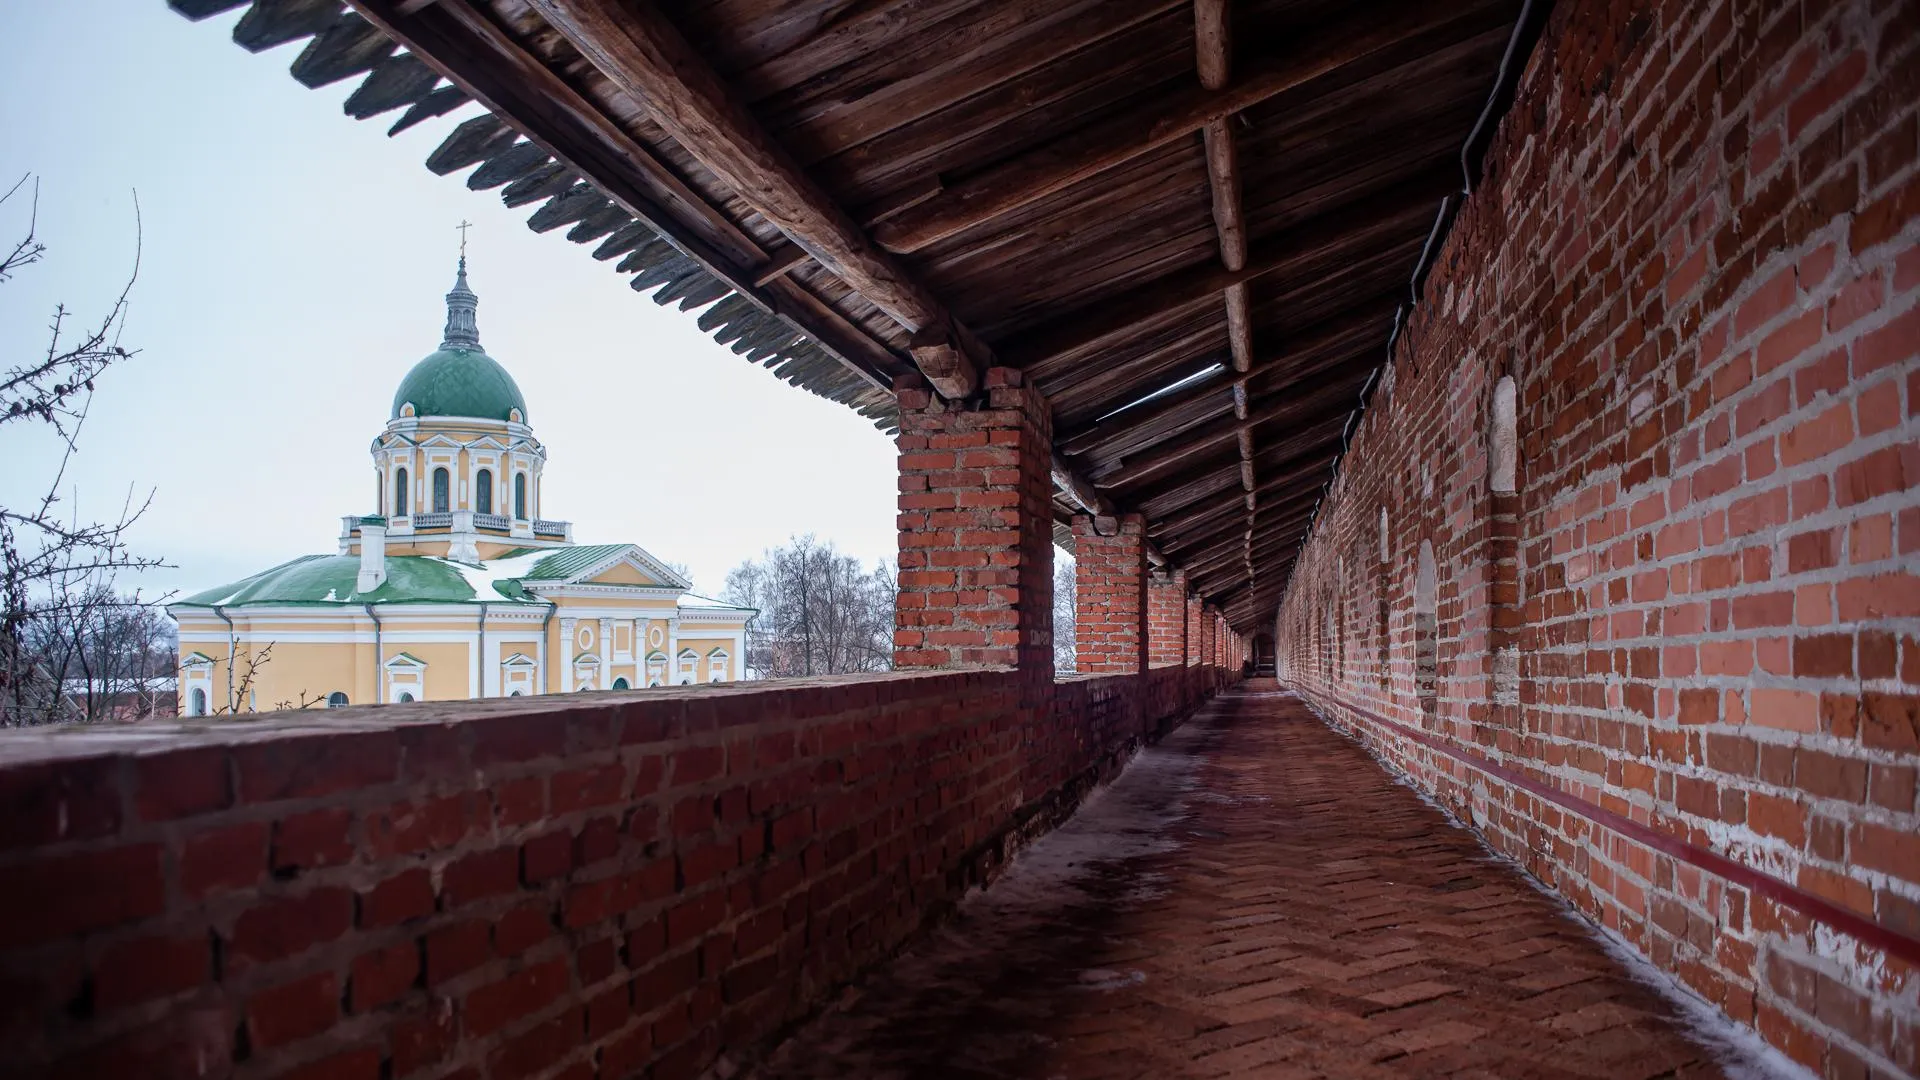 Маленький и неприступный: подкаст «Путь‑дорога» расскажет про Зарайск со старинным кремлем